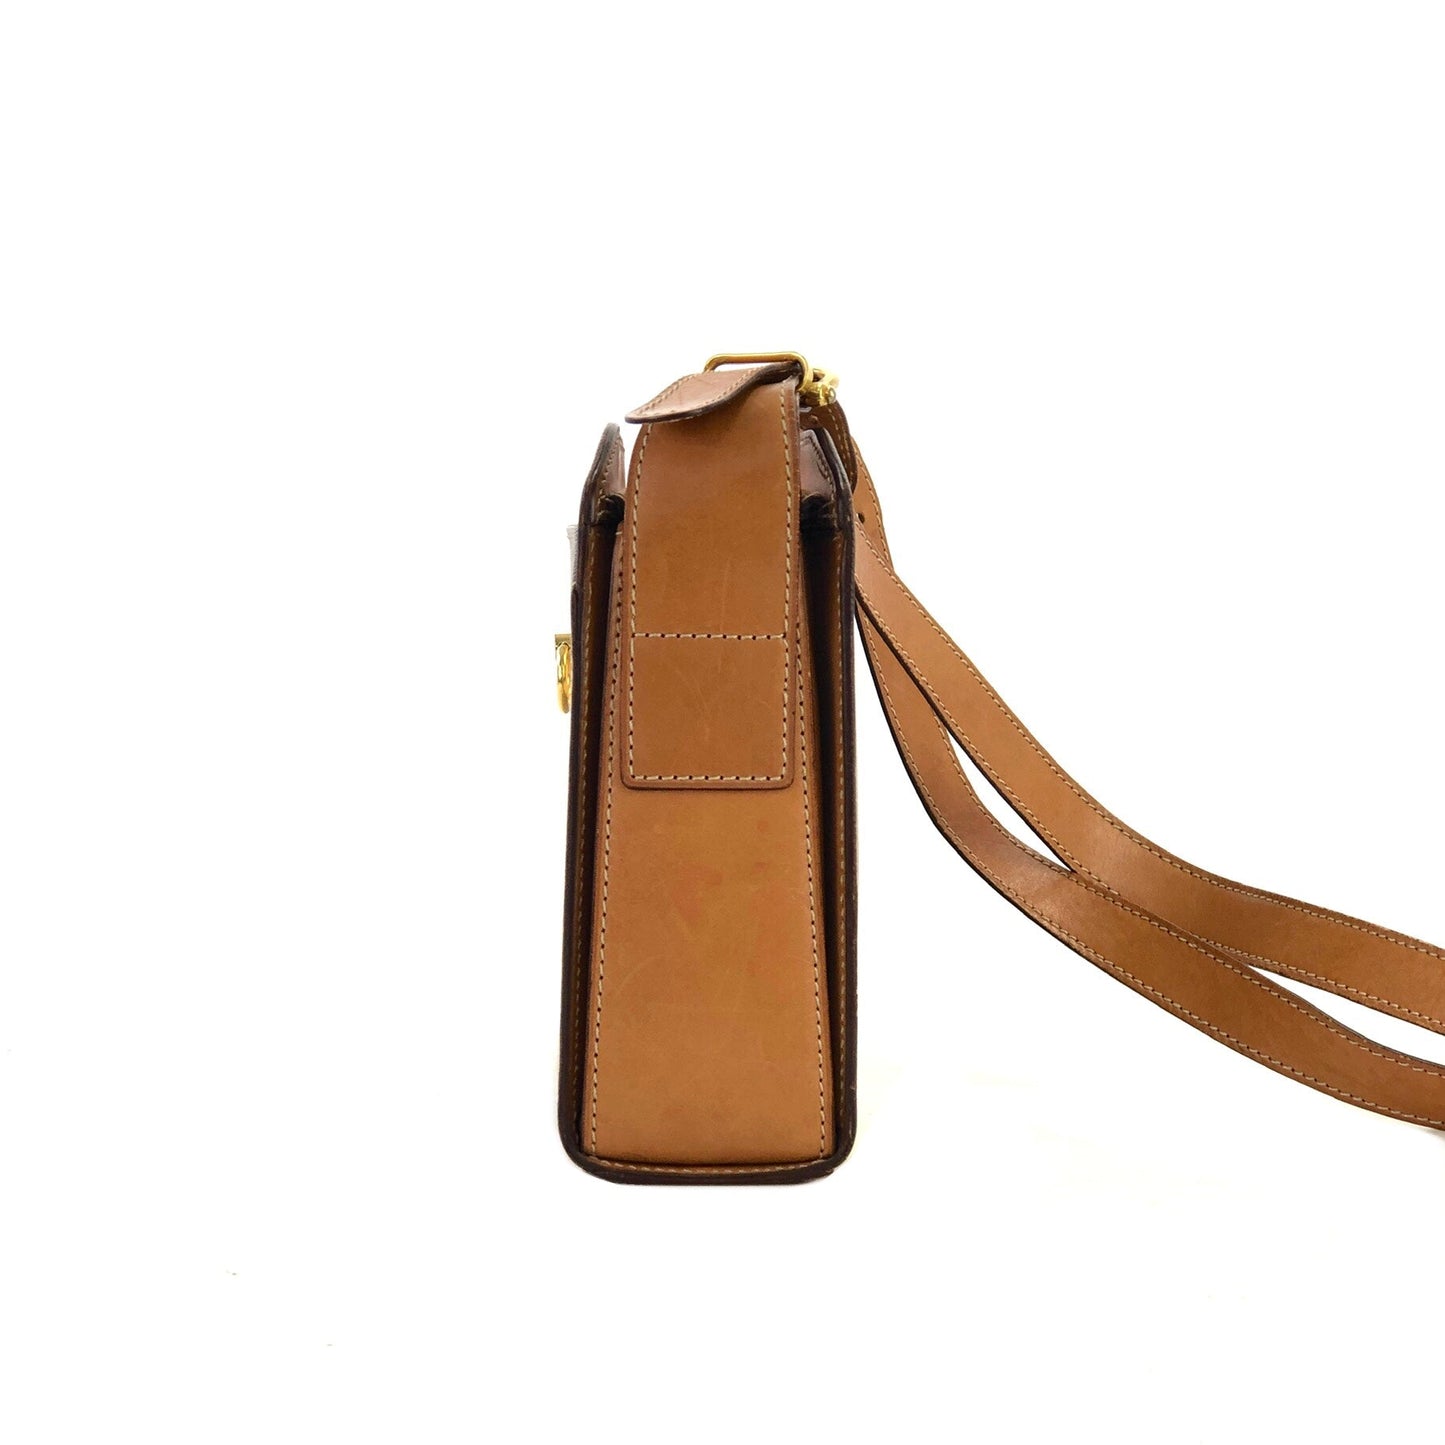 CELINE Macadam Mantel PVC Leather Shoulder Bag Beige Old Celine Vintage butgkf